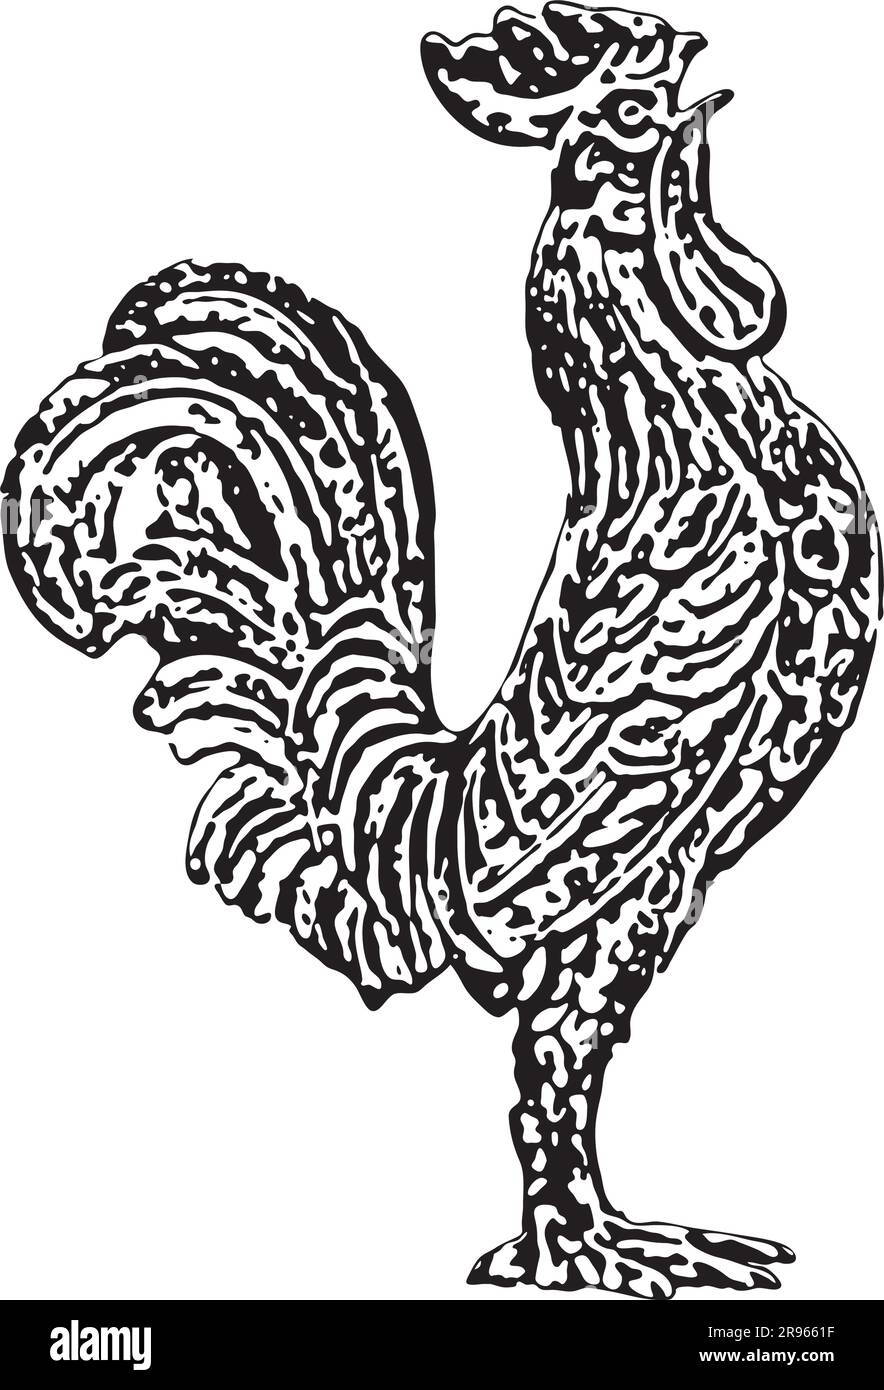 Pochoir noir et blanc représentant le fier coq courrant de la fontaine Galli de Loreto Illustration de Vecteur